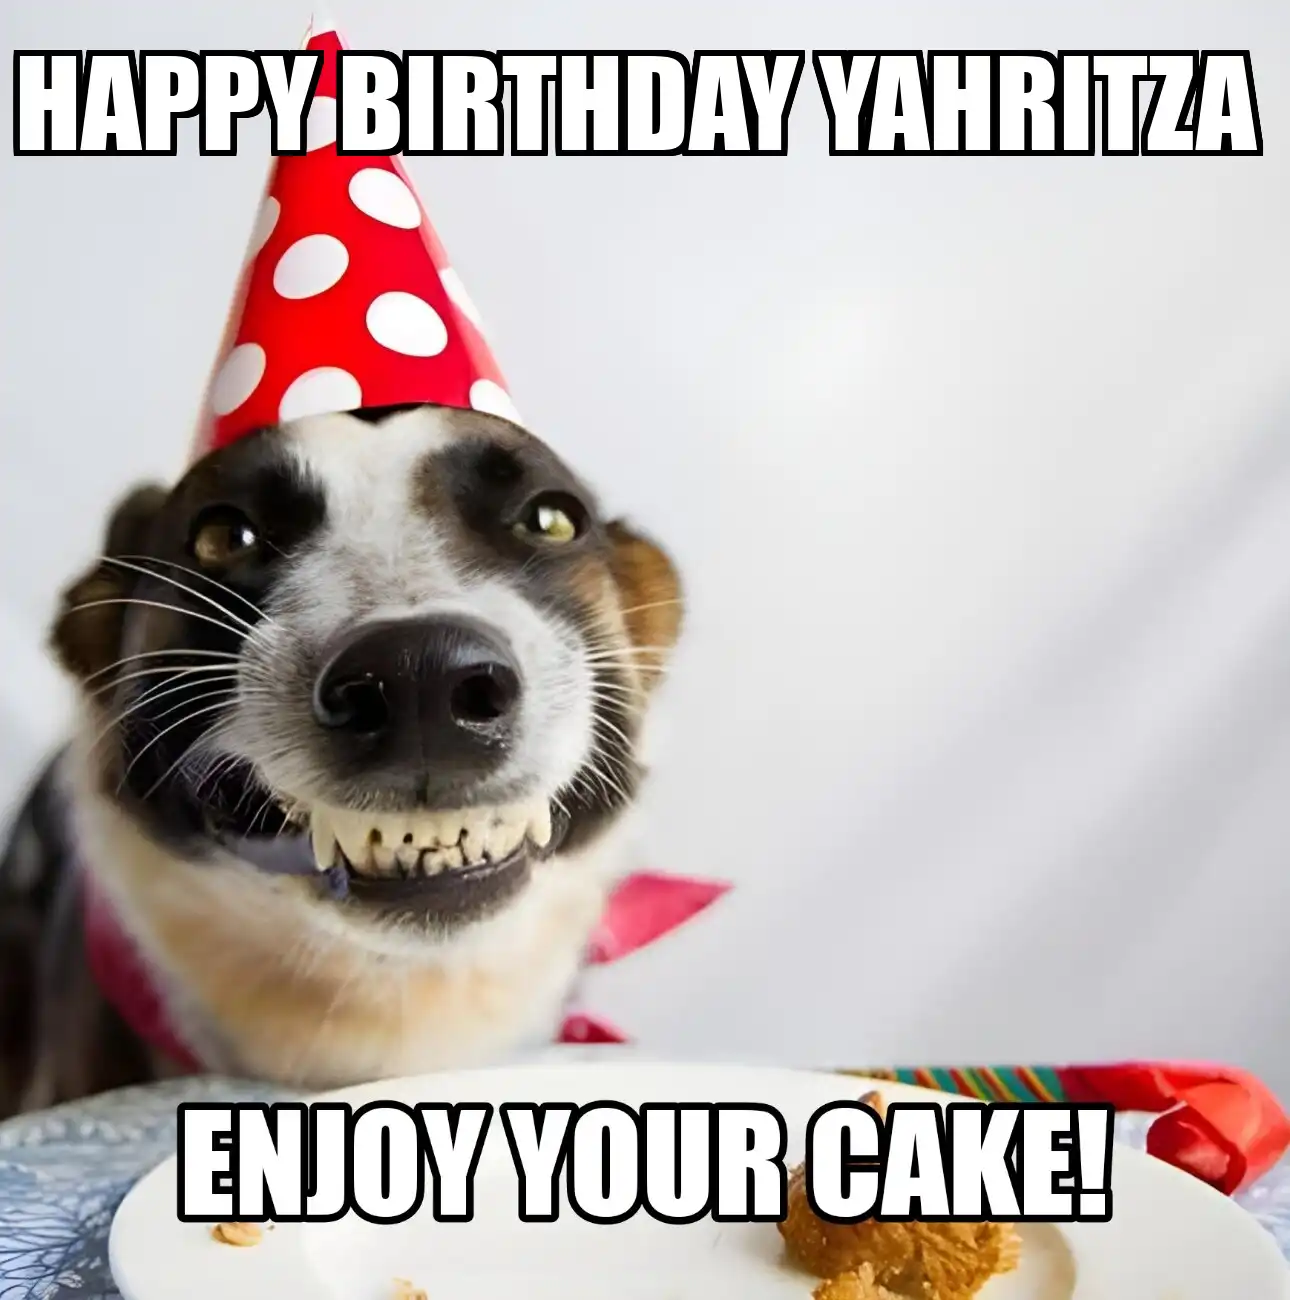 Happy Birthday Yahritza Enjoy Your Cake Dog Meme